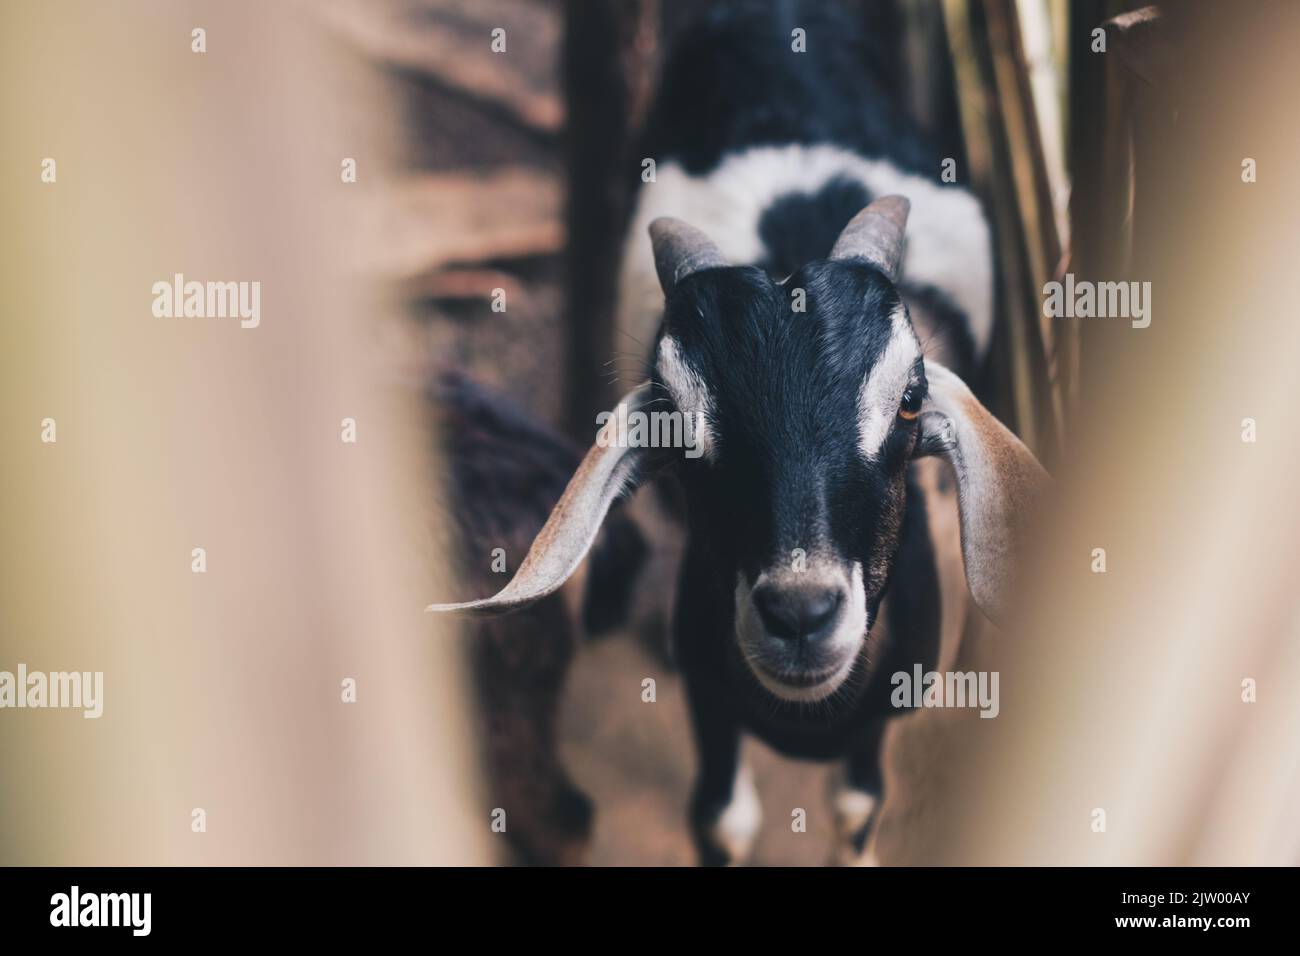 Kopfaufnahme einer freifahrenden Ziege mit schwarzem, braunem und weißem Fell, das zur Kamera schaut. Selektiver Fokus. Stockfoto